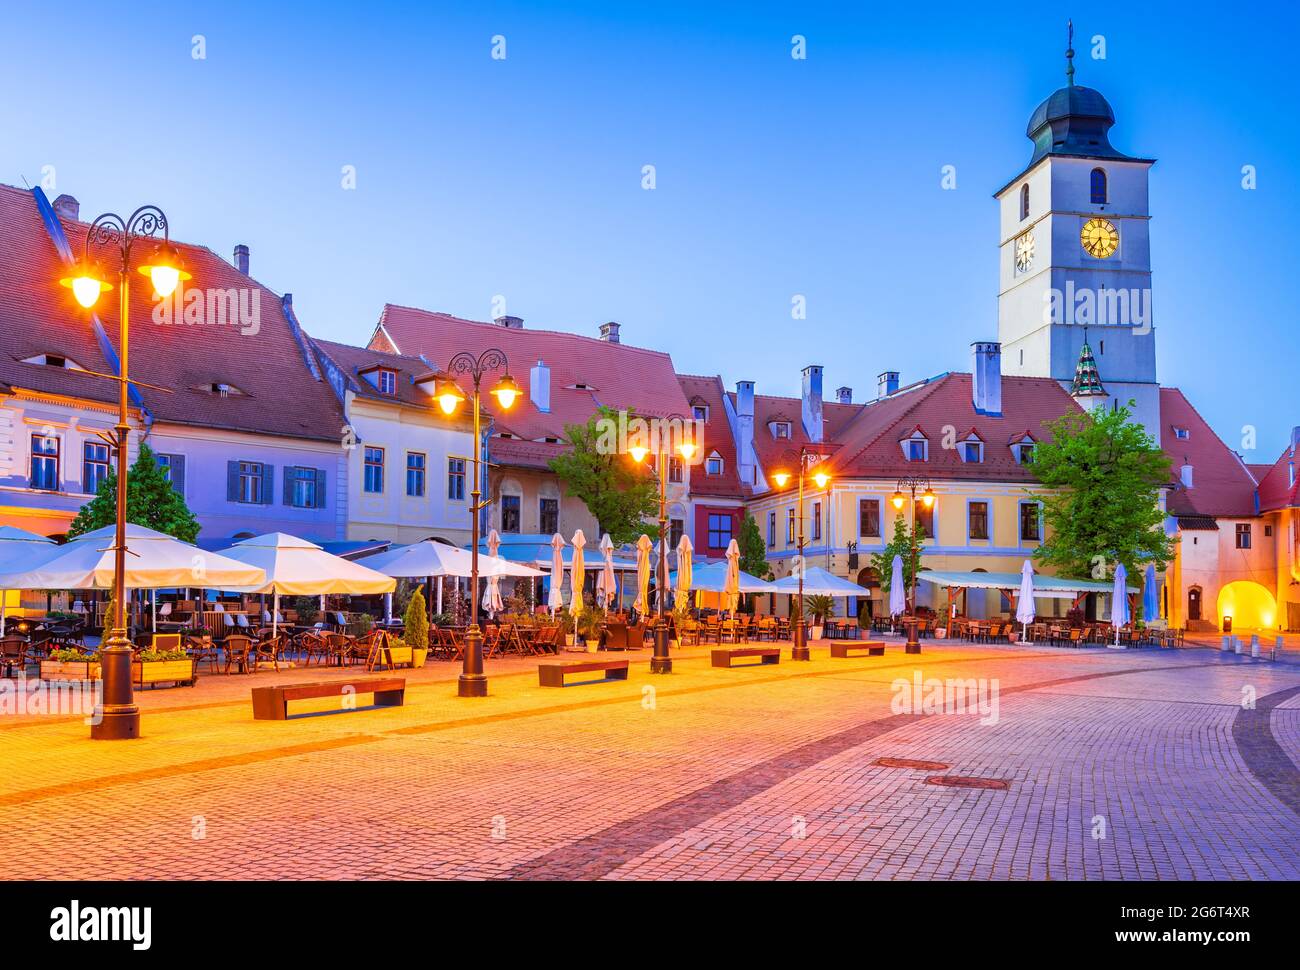 Sibiu, Rumänien. Dämmerungsbild des Rathausturms auf dem kleinen Platz, sächsische Sicht auf Siebenbürgen. Stockfoto